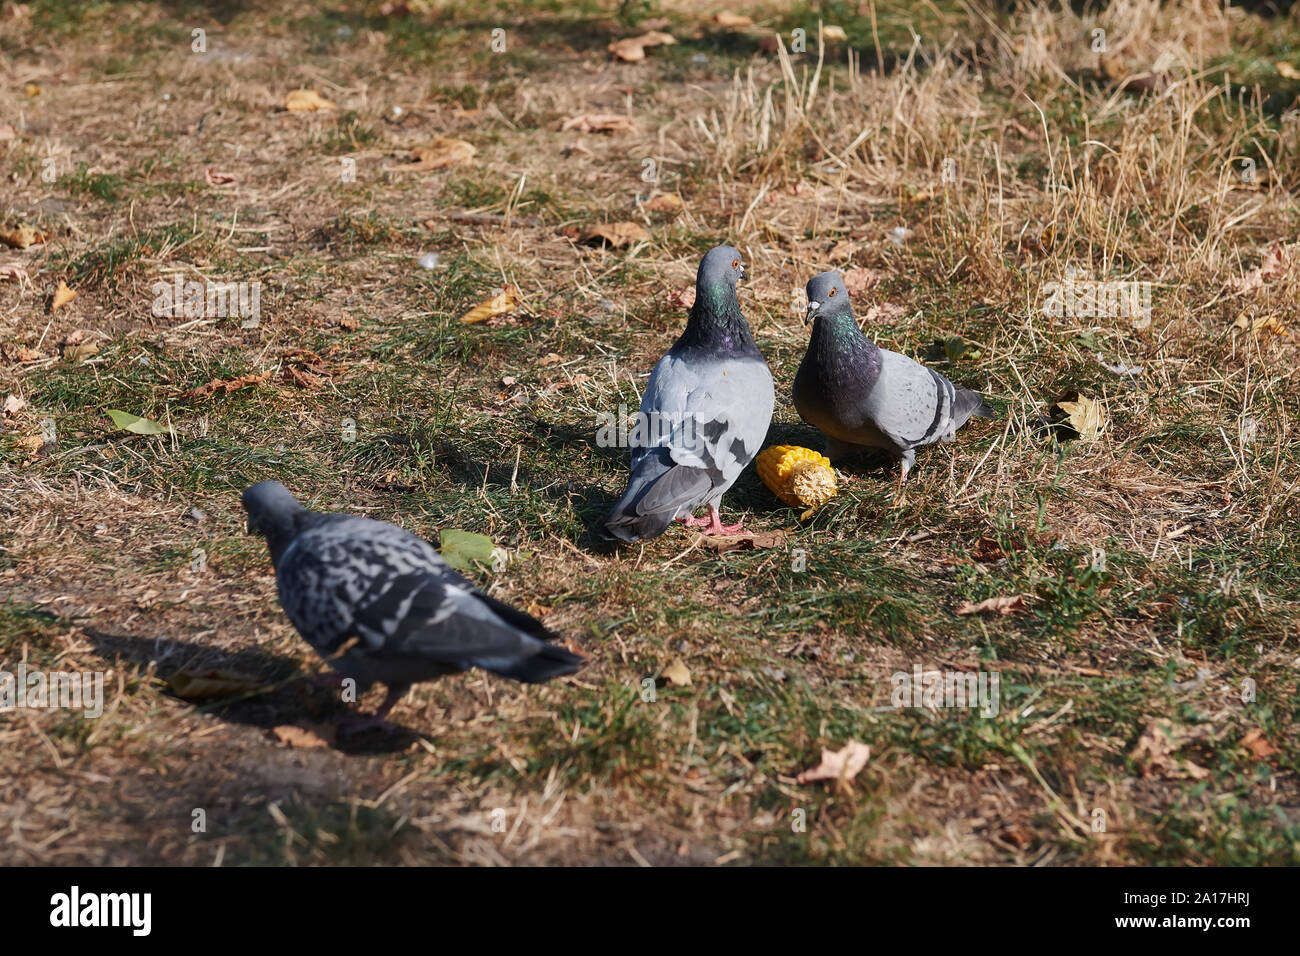 Zwei Tauben Essen Mais. Schlacht von Tauben für Lebensmittel. Vögel an einem sonnigen Tag im Freien. Interessante Szene. Stockfoto